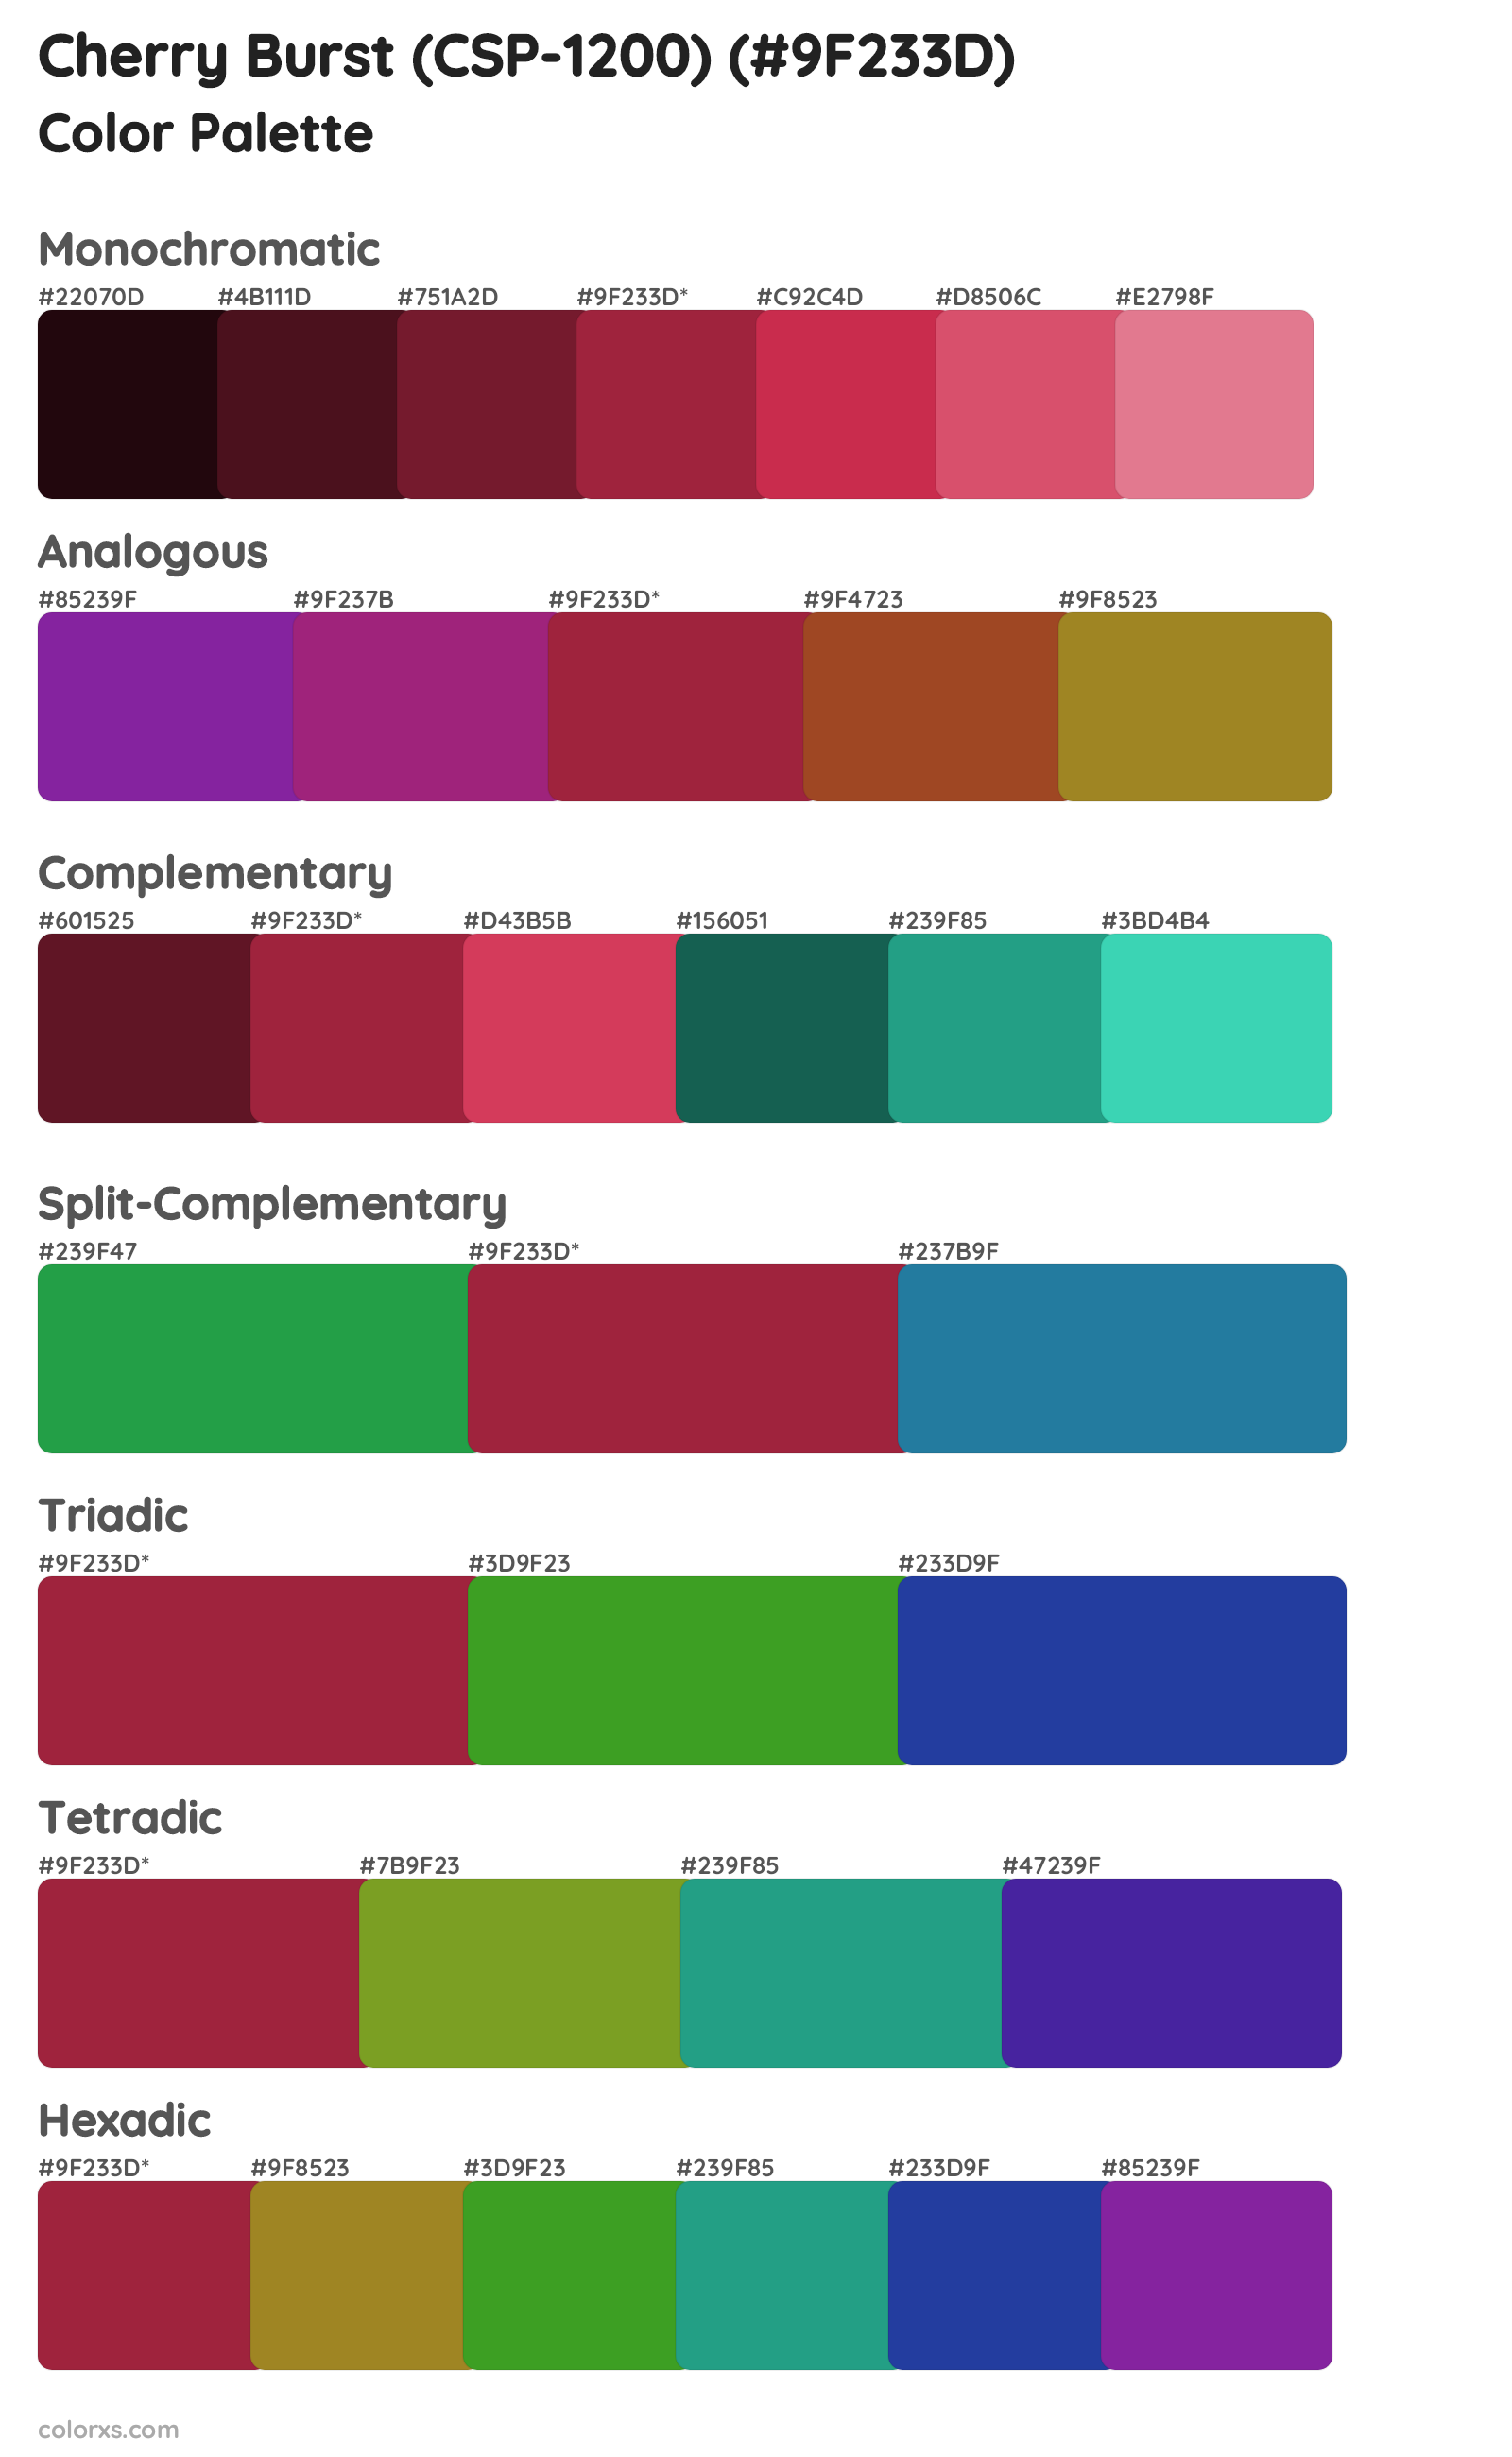 Cherry Burst (CSP-1200) Color Scheme Palettes